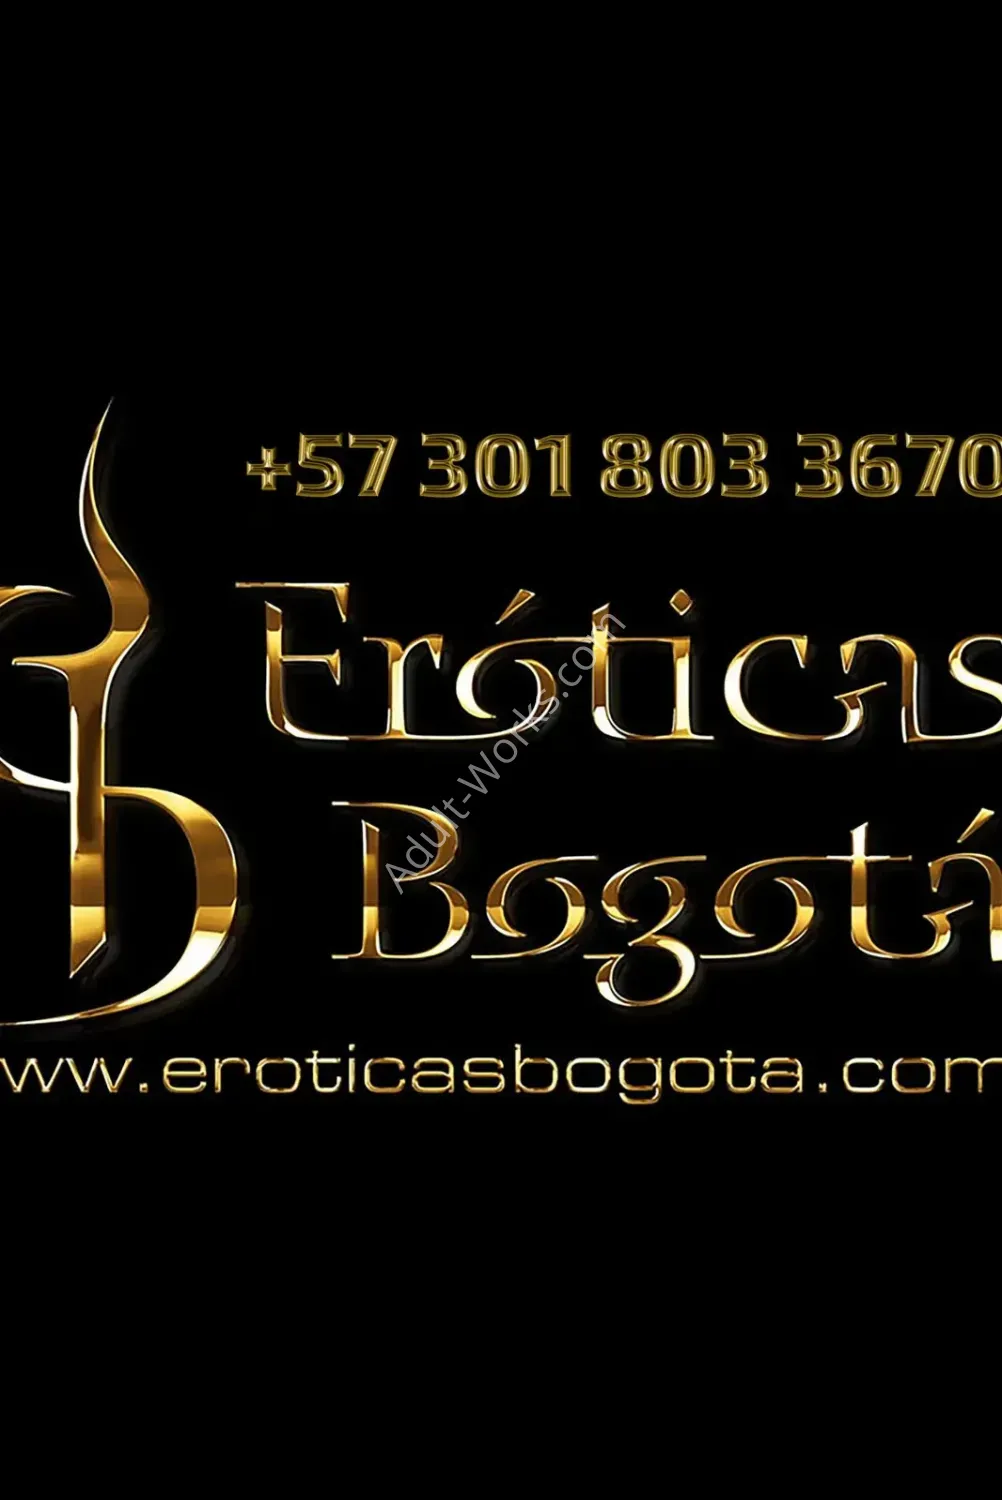 Eroticas Bogota